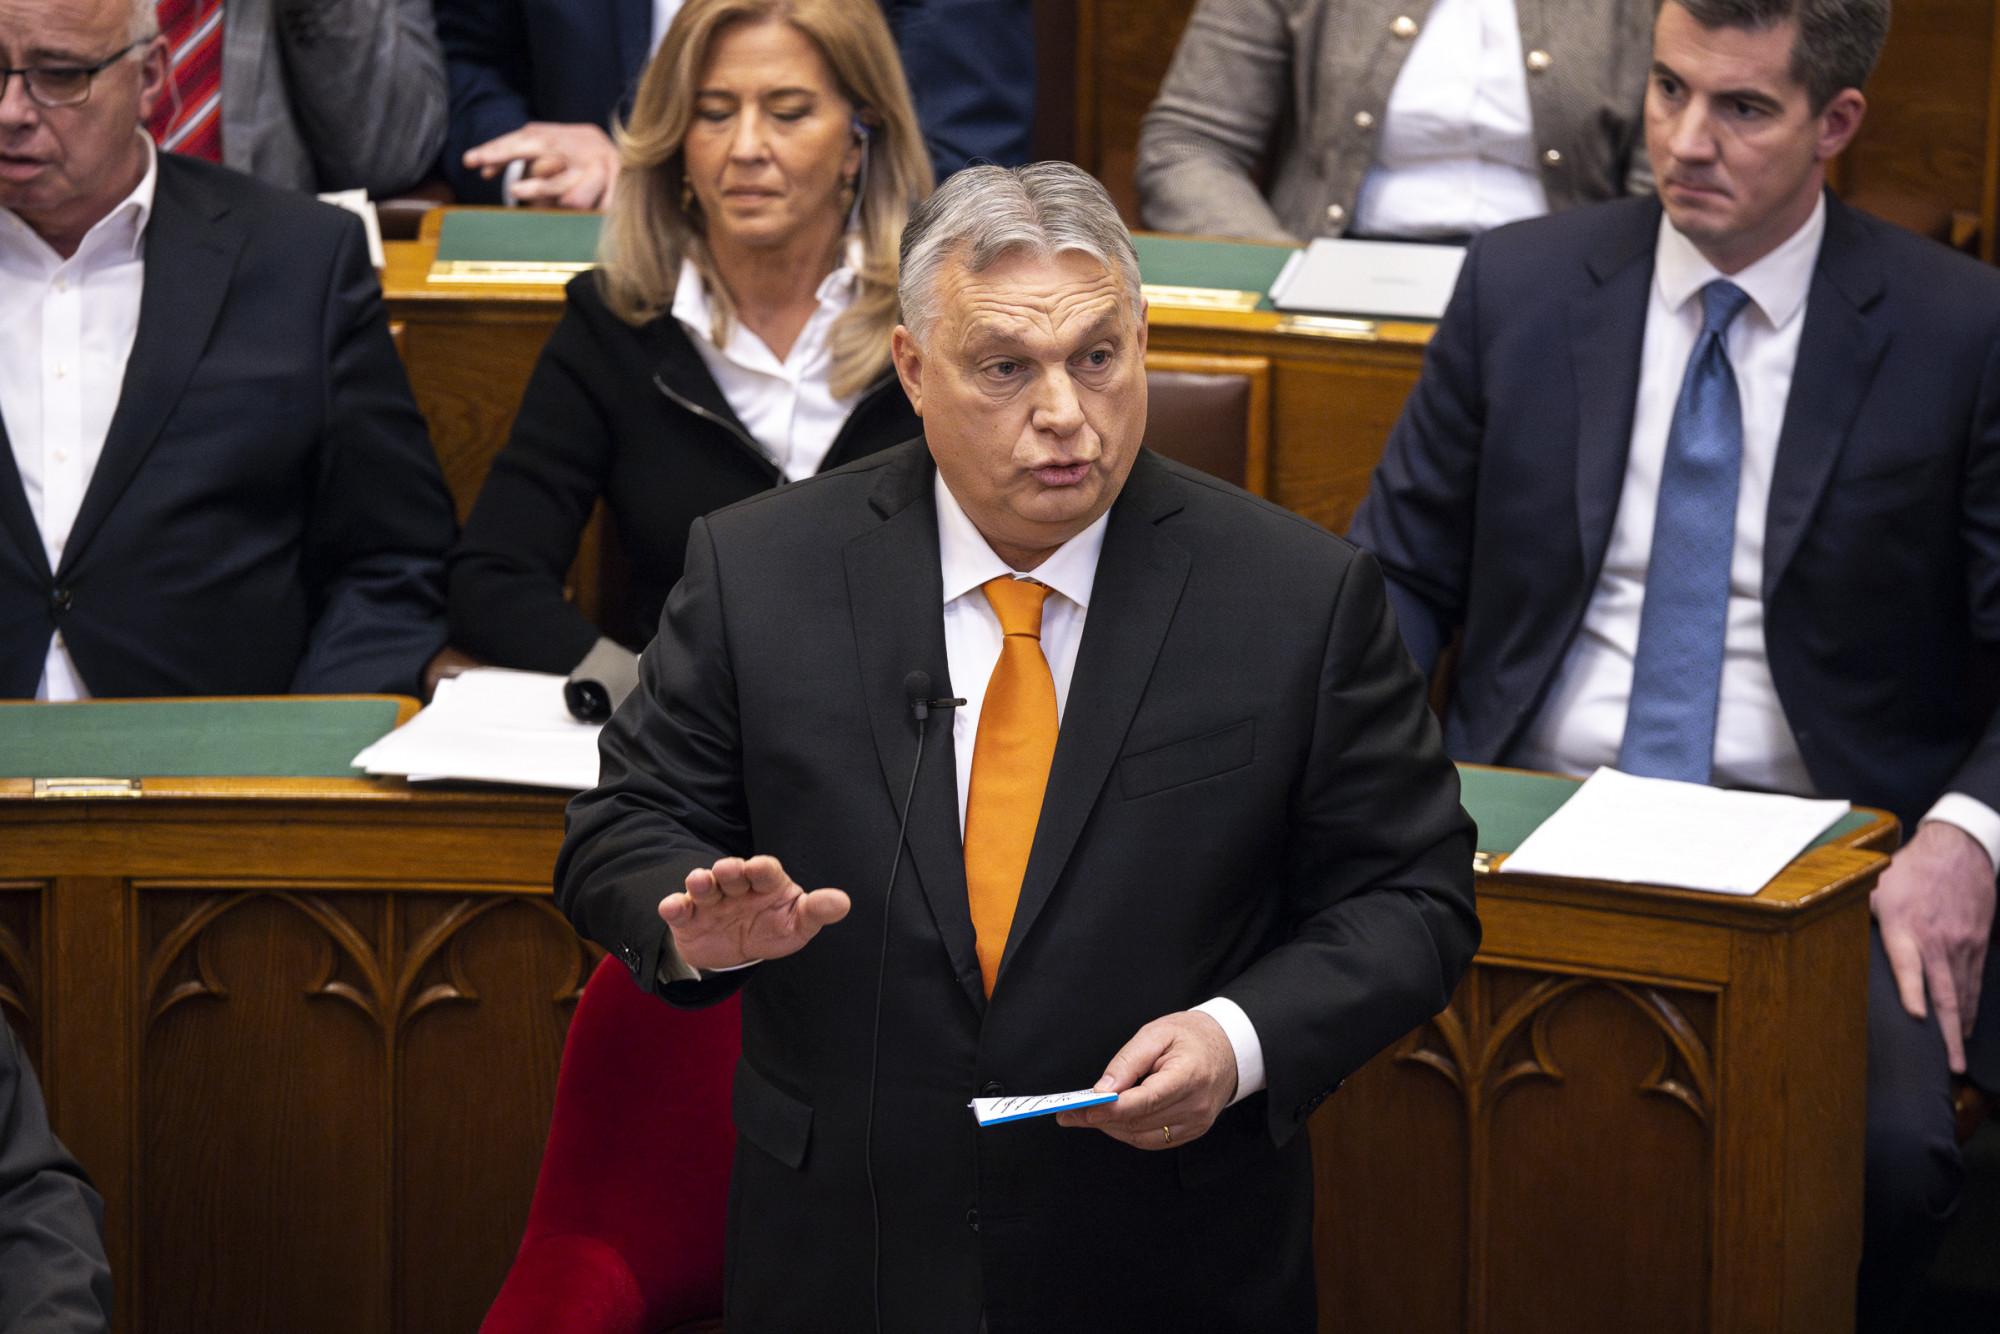 „Ha önök azt gondolják, hogy ezt érdemes az alkotmányba emelni, nem leszünk akadályai ennek” – mondta Orbán Toroczkainak a készpénzhasználatról